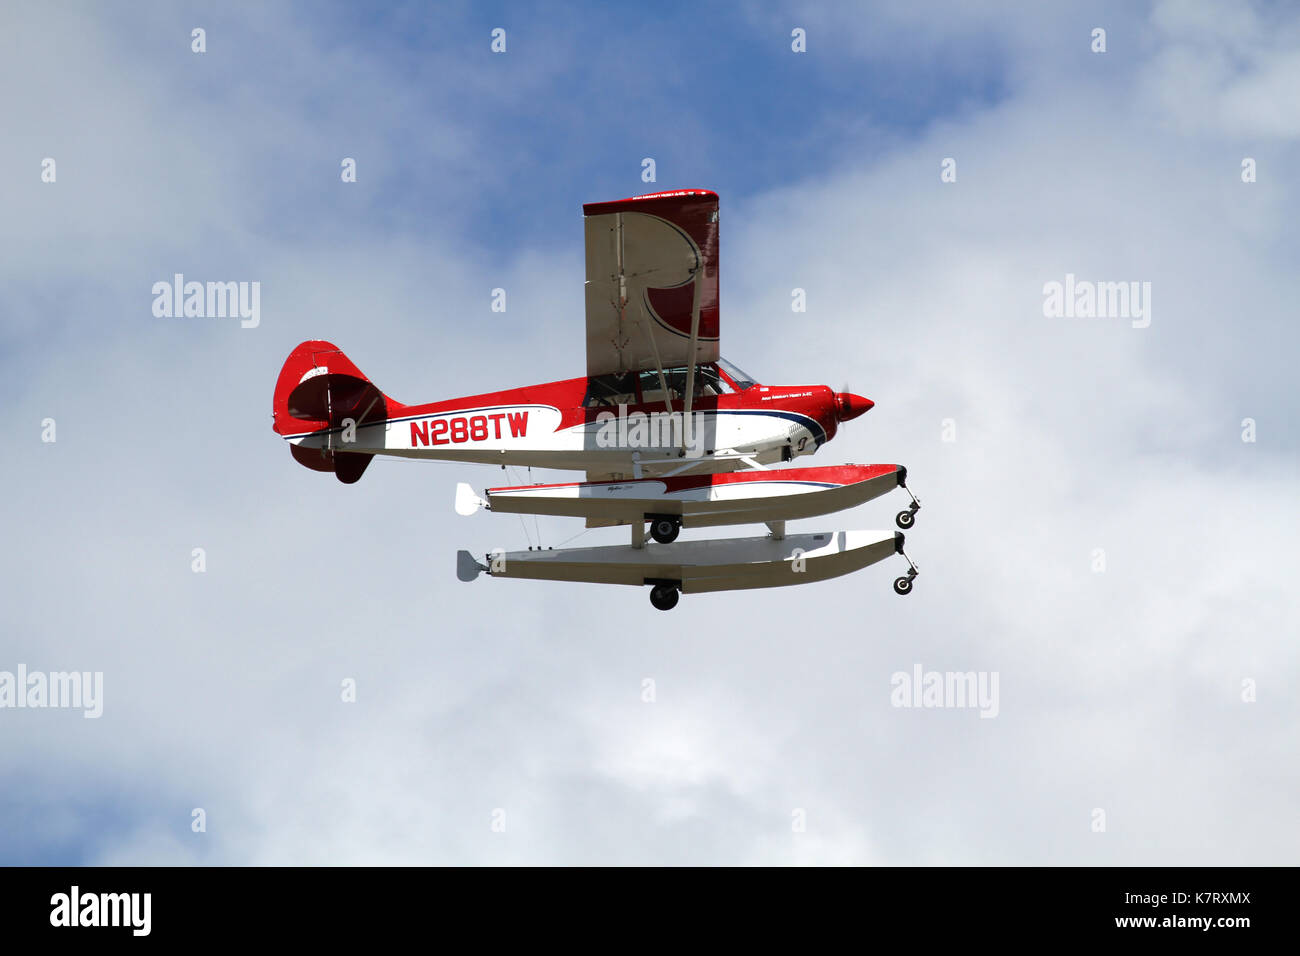 Akron, USA - 9 septembre : un avion aviat a-1c-180 à props et pistons airshow en cours à l'aéroport international d'Akron Fulton Banque D'Images